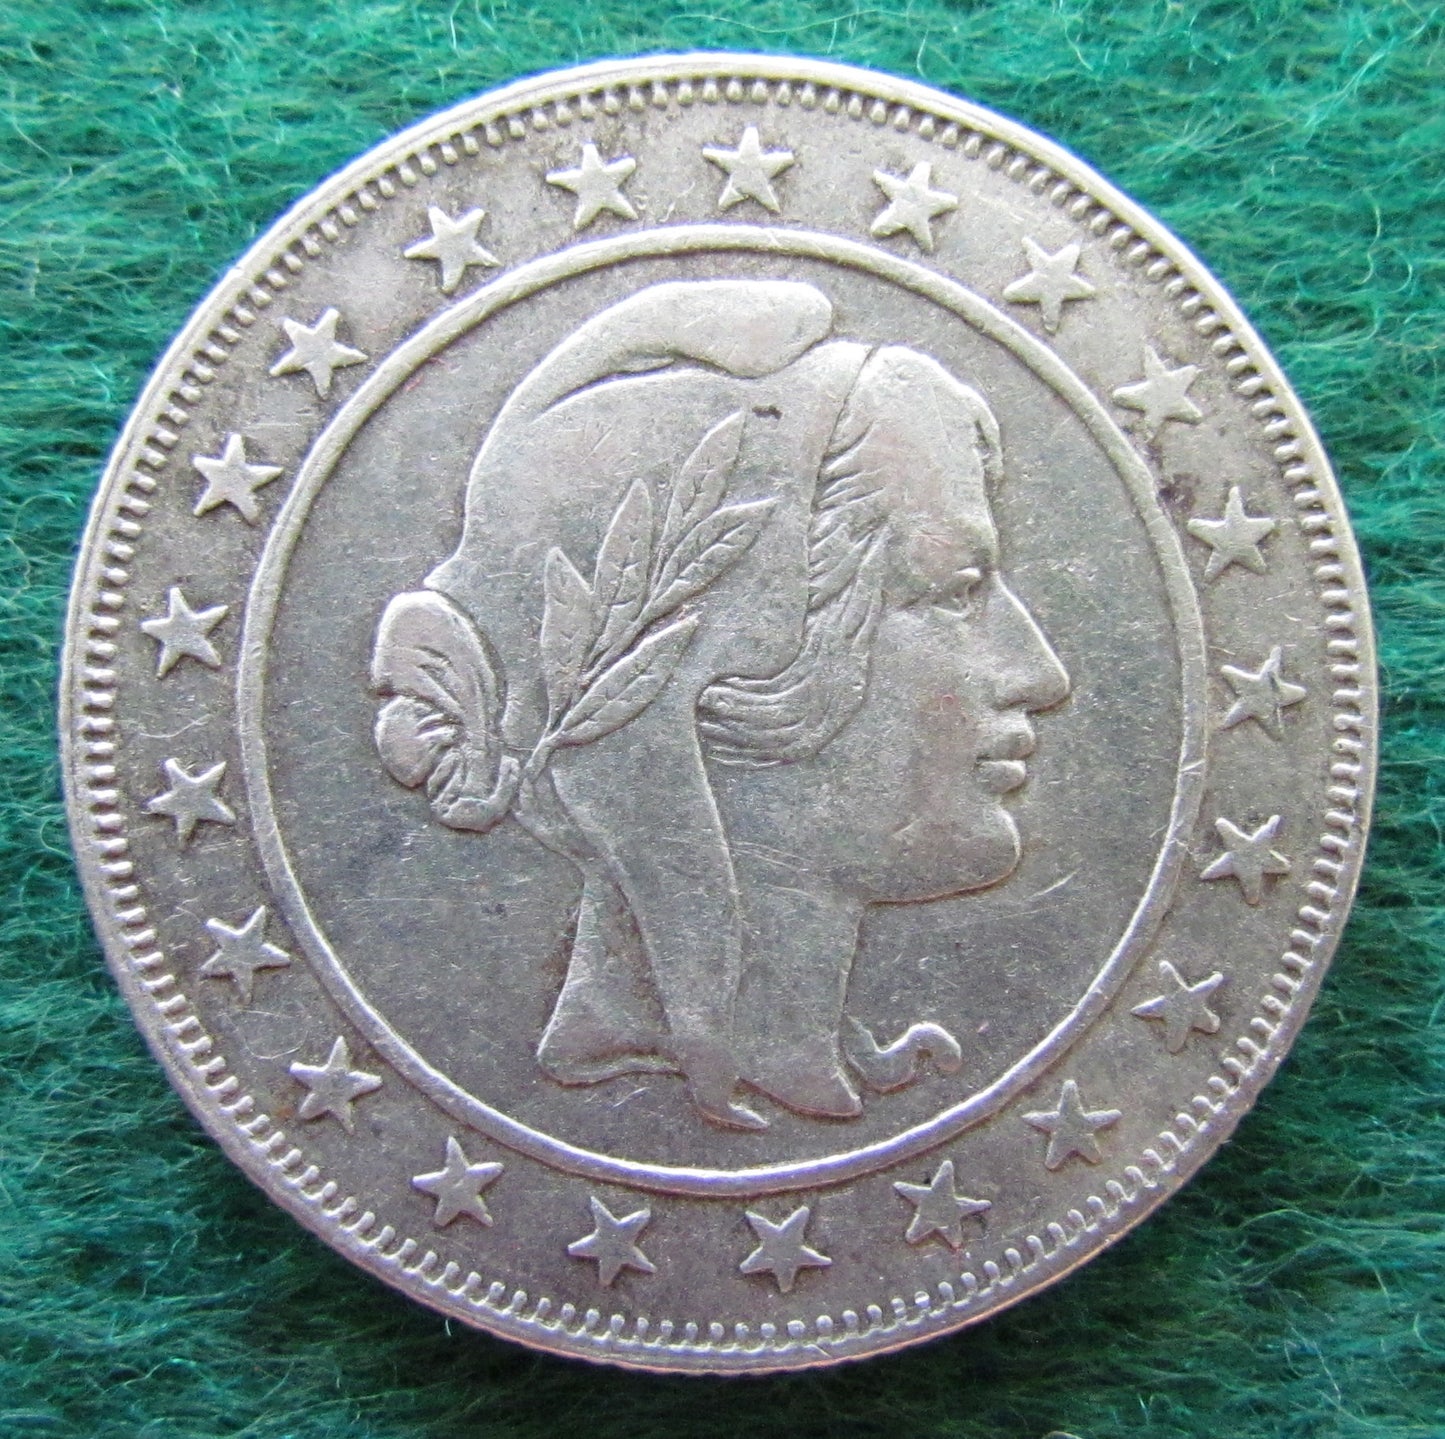 Brazil 1929 2000 Reiz Coin - Circulated